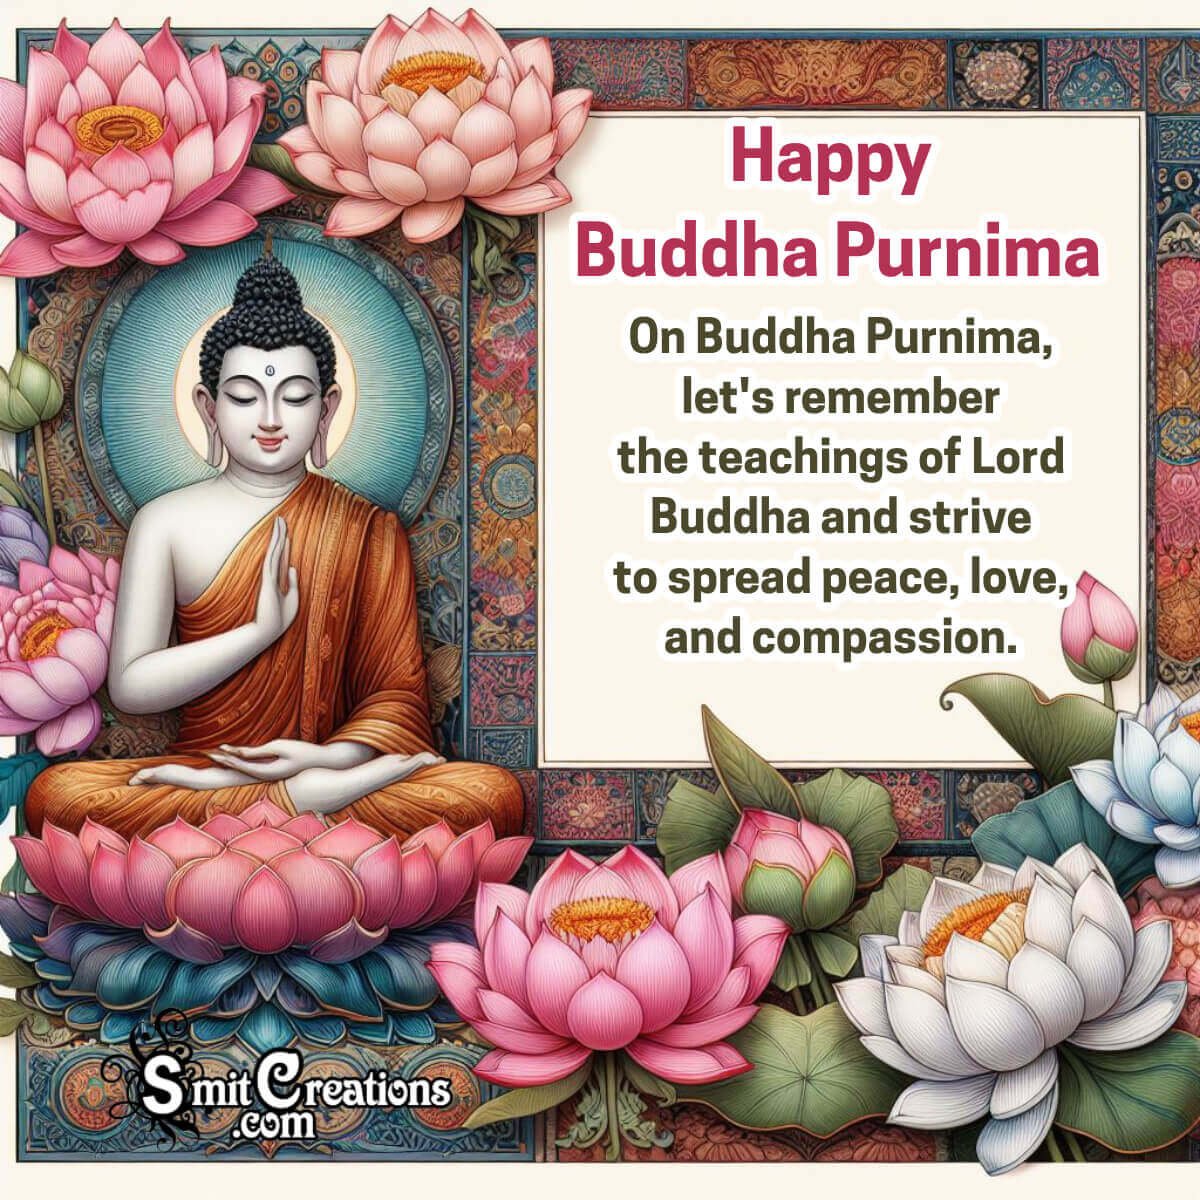 Happy Buddha Purnima Message Picture